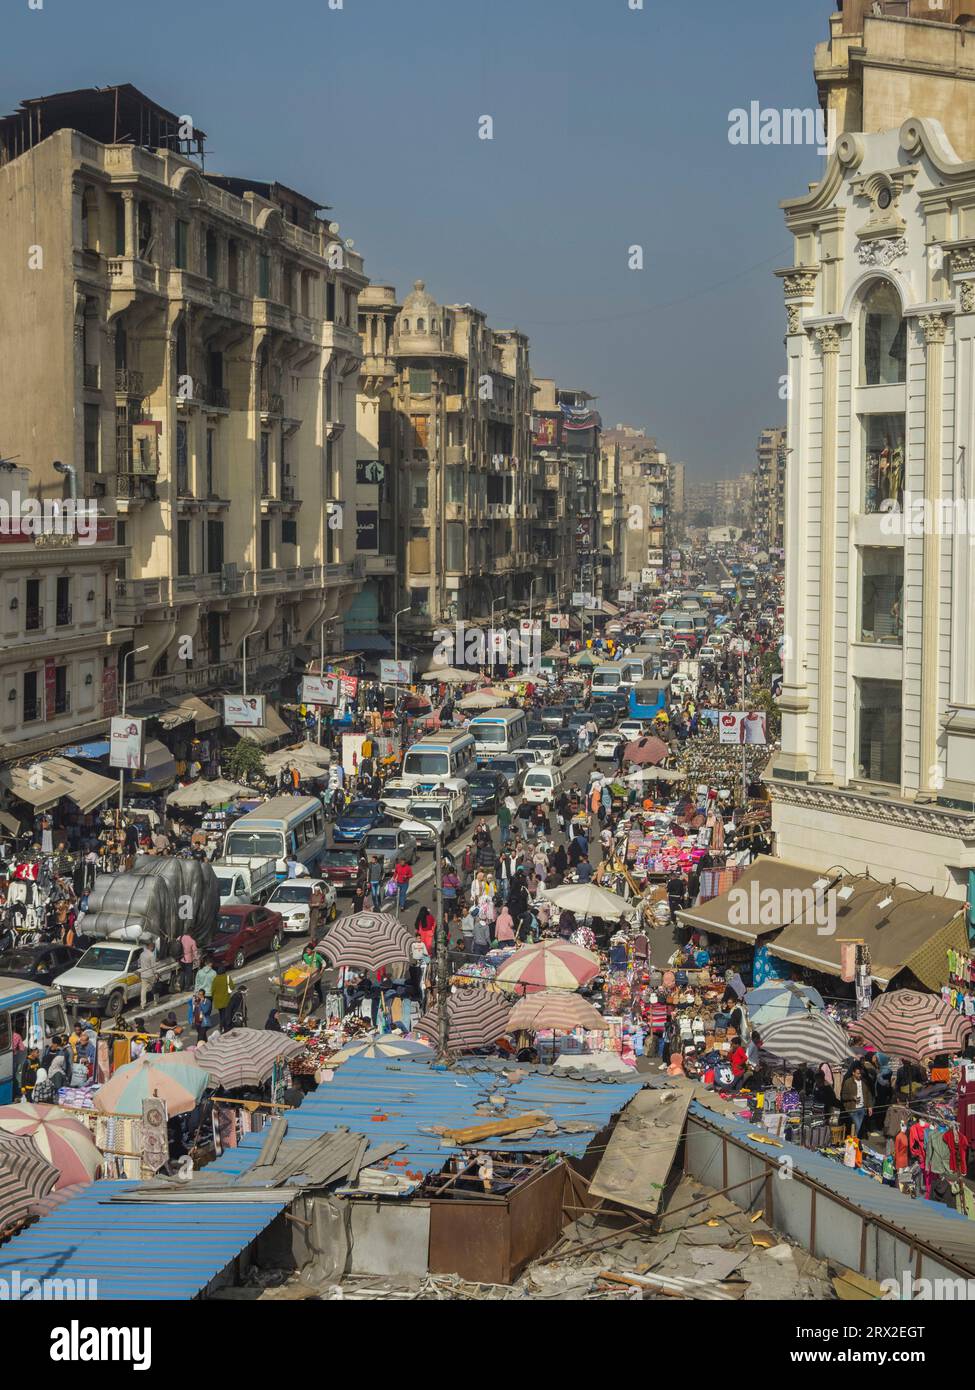 Le bazar Khan el Khalili, un labyrinthe de rues avec des milliers de vendeurs vendant leurs marchandises, le Caire, l'Egypte, l'Afrique du Nord, l'Afrique Banque D'Images